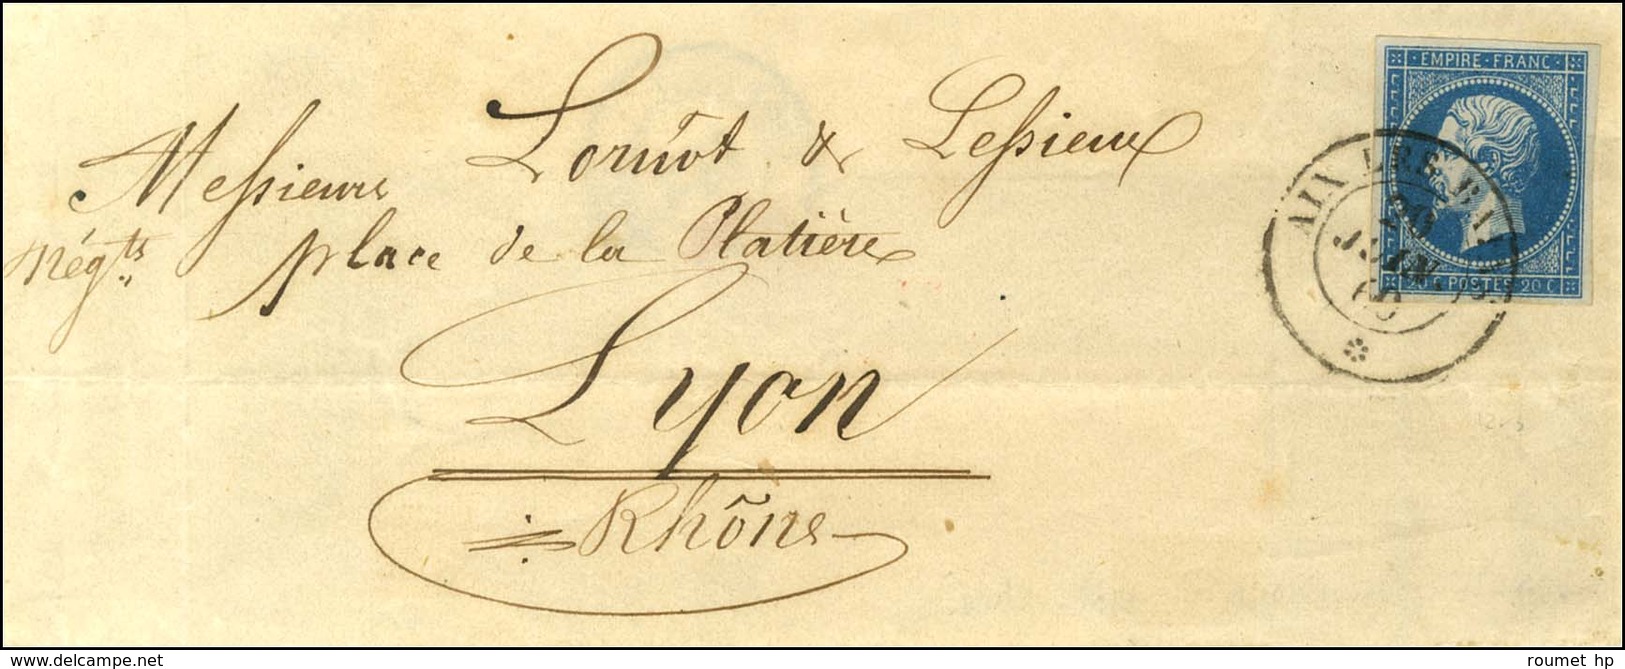 Càd Sarde AIX LES BAINS / * / N° 14 Sur Lettre Pour Lyon 20 JUIN 1860. - SUP. - R. - 1853-1860 Napoléon III.